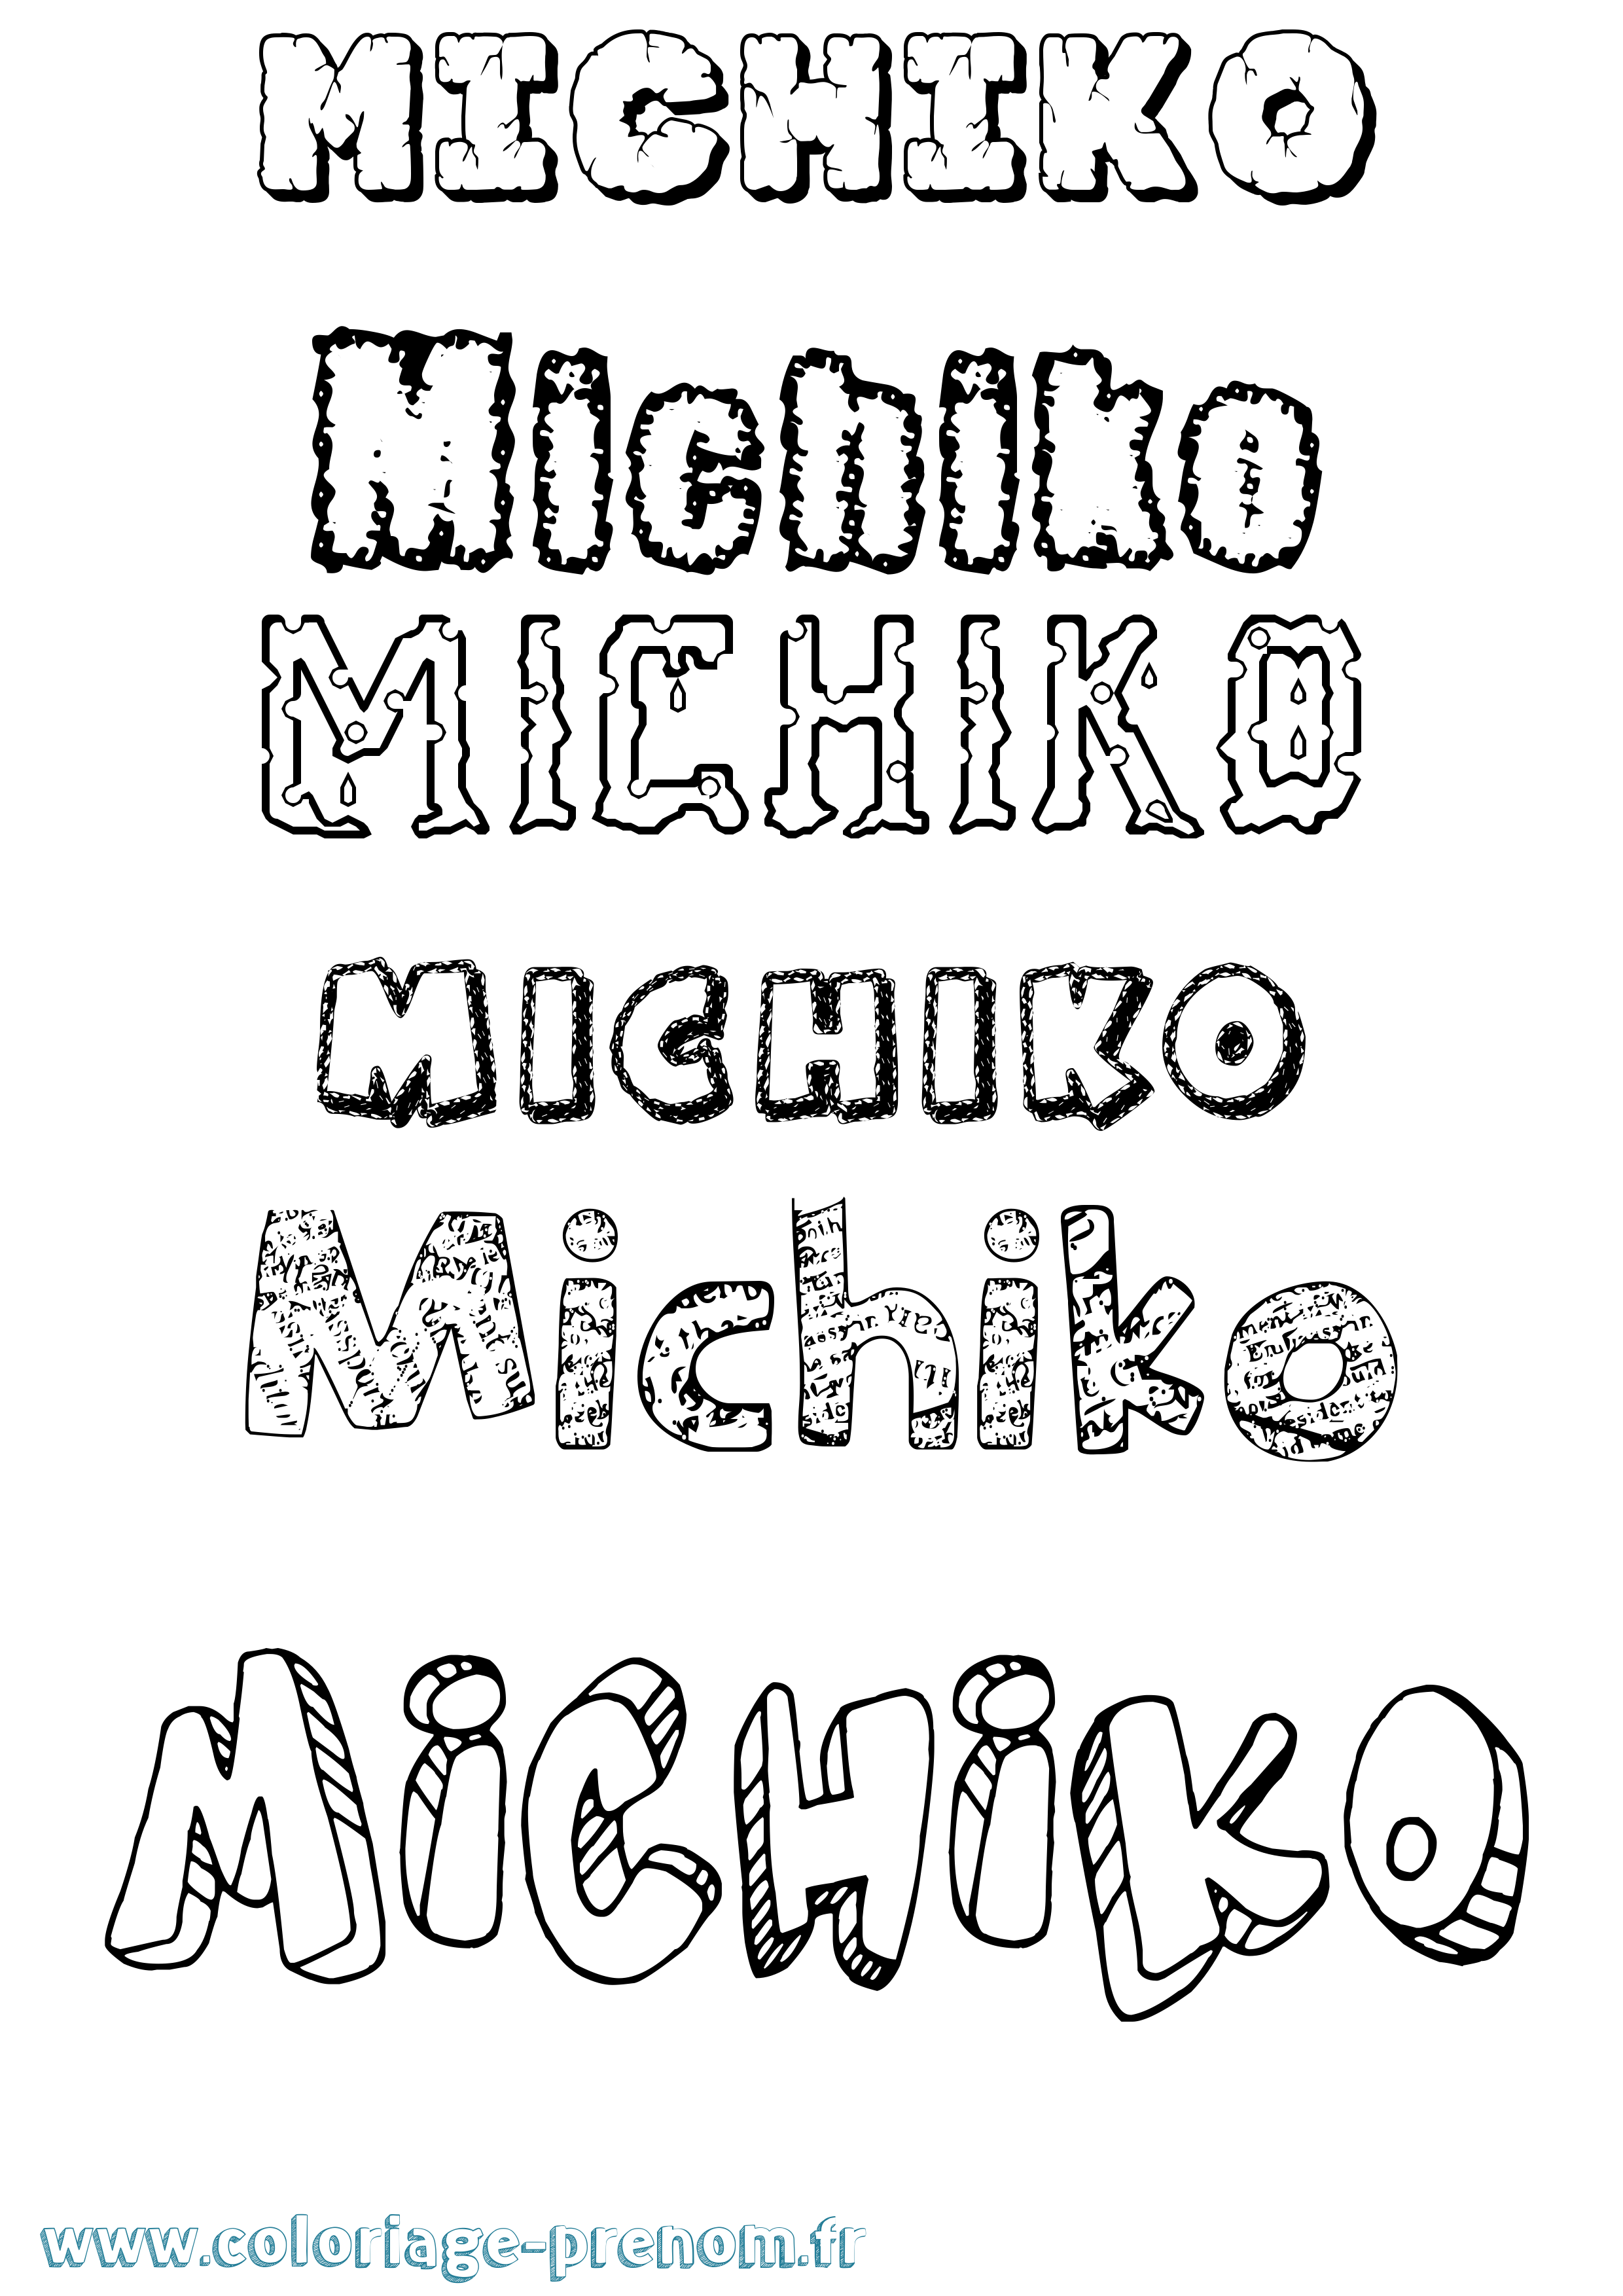 Coloriage prénom Michiko Destructuré